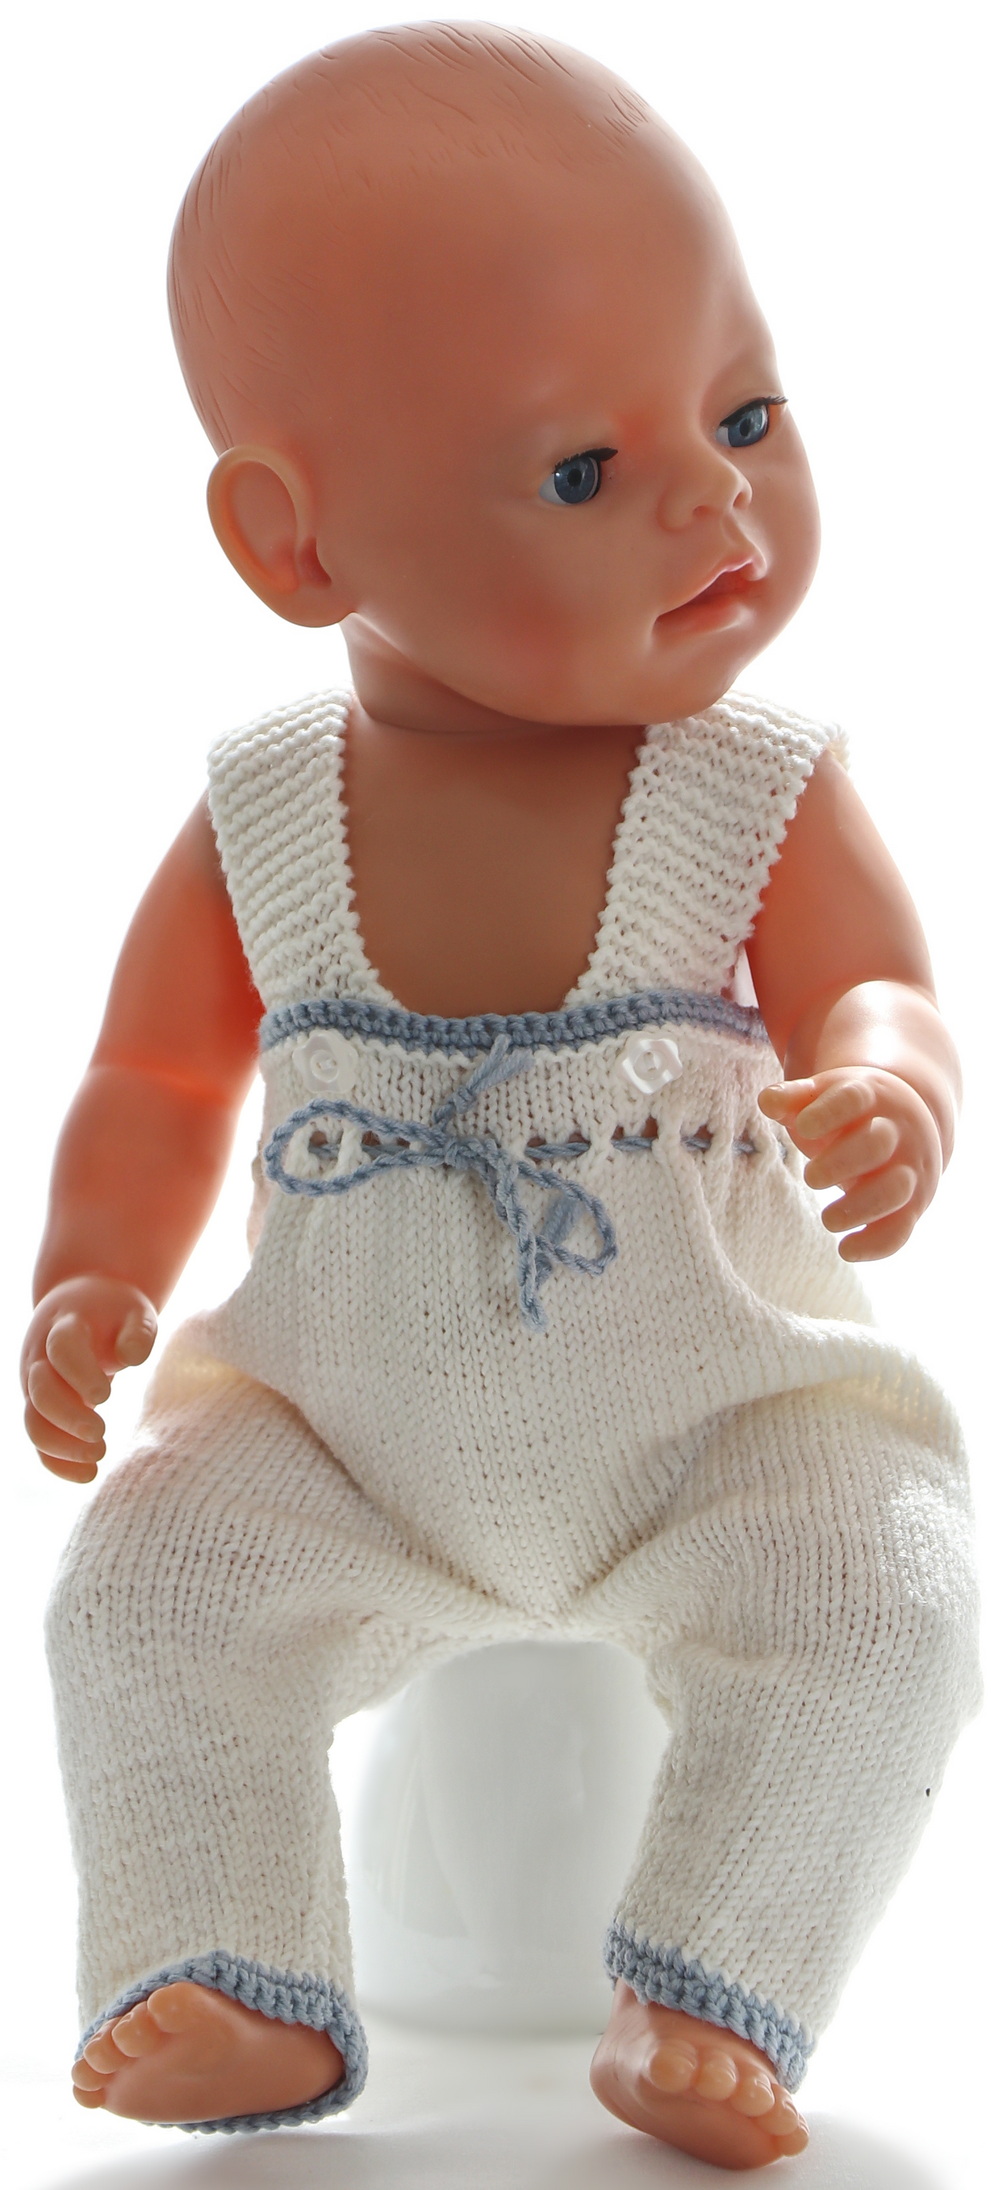 En flott strekkbukse (tights) med seler og knapping i livet er strikket i grått til AG dukken, hvitt til Baby born.